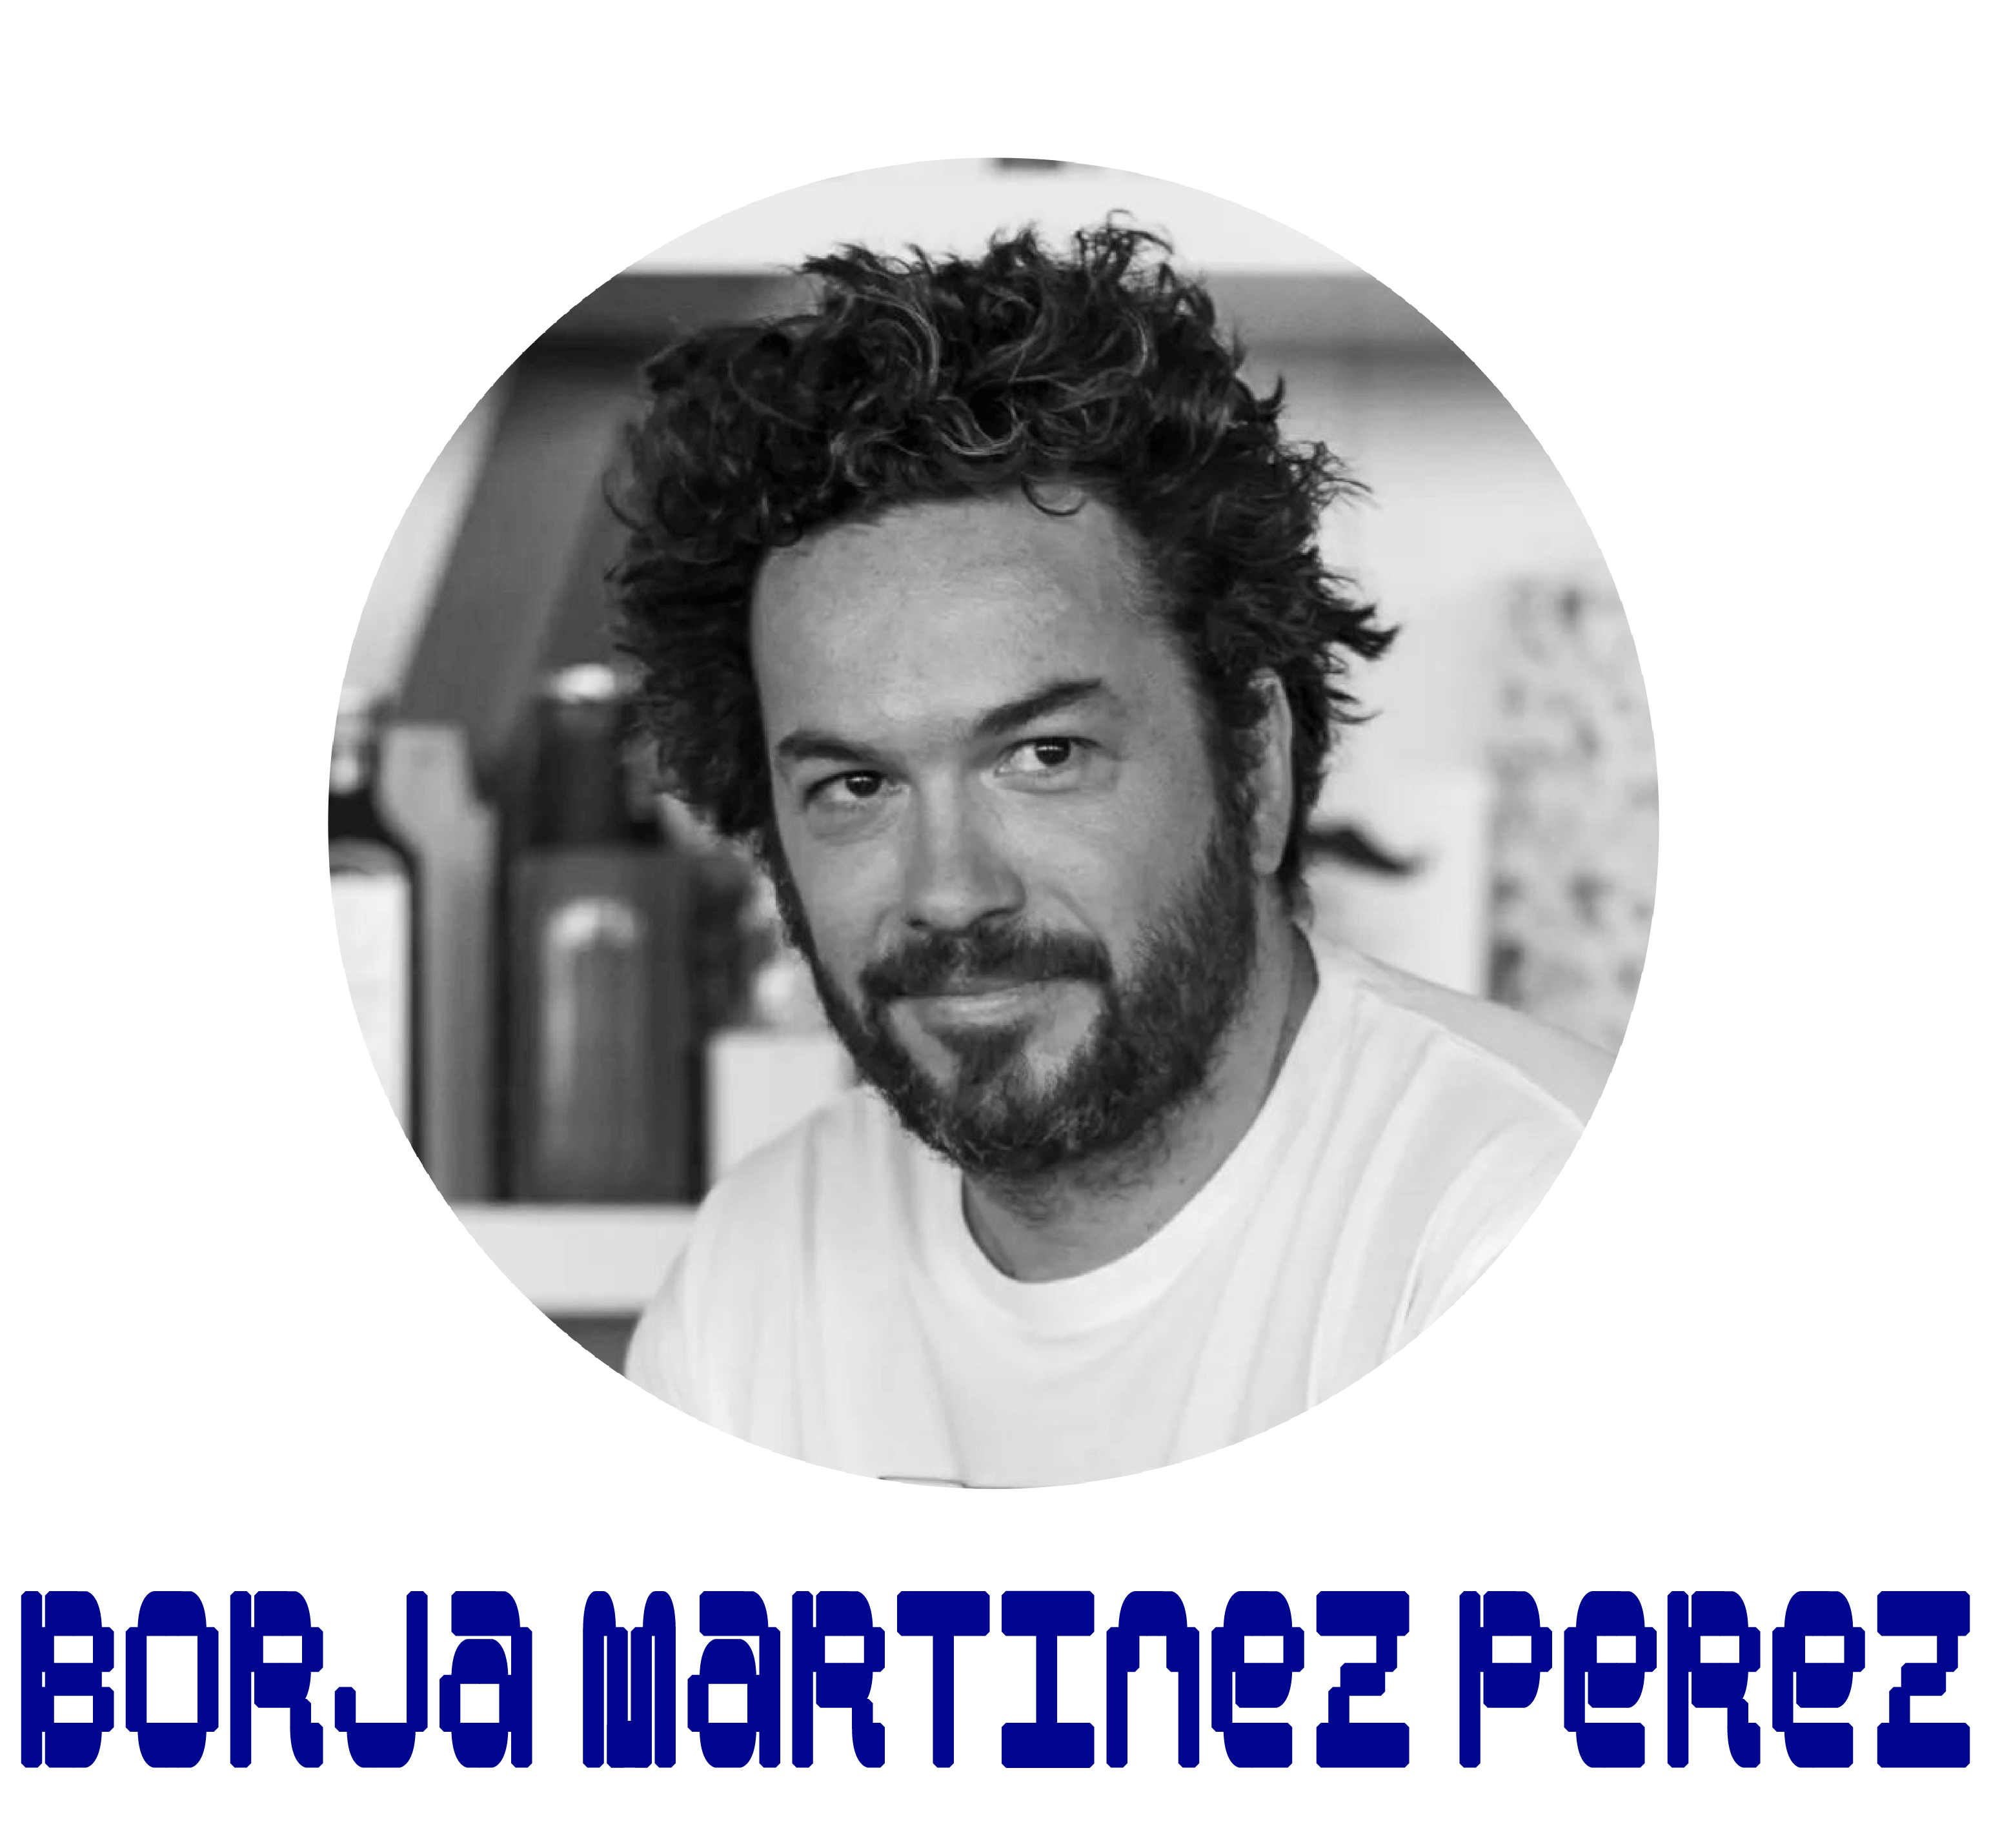 Borja Martinez